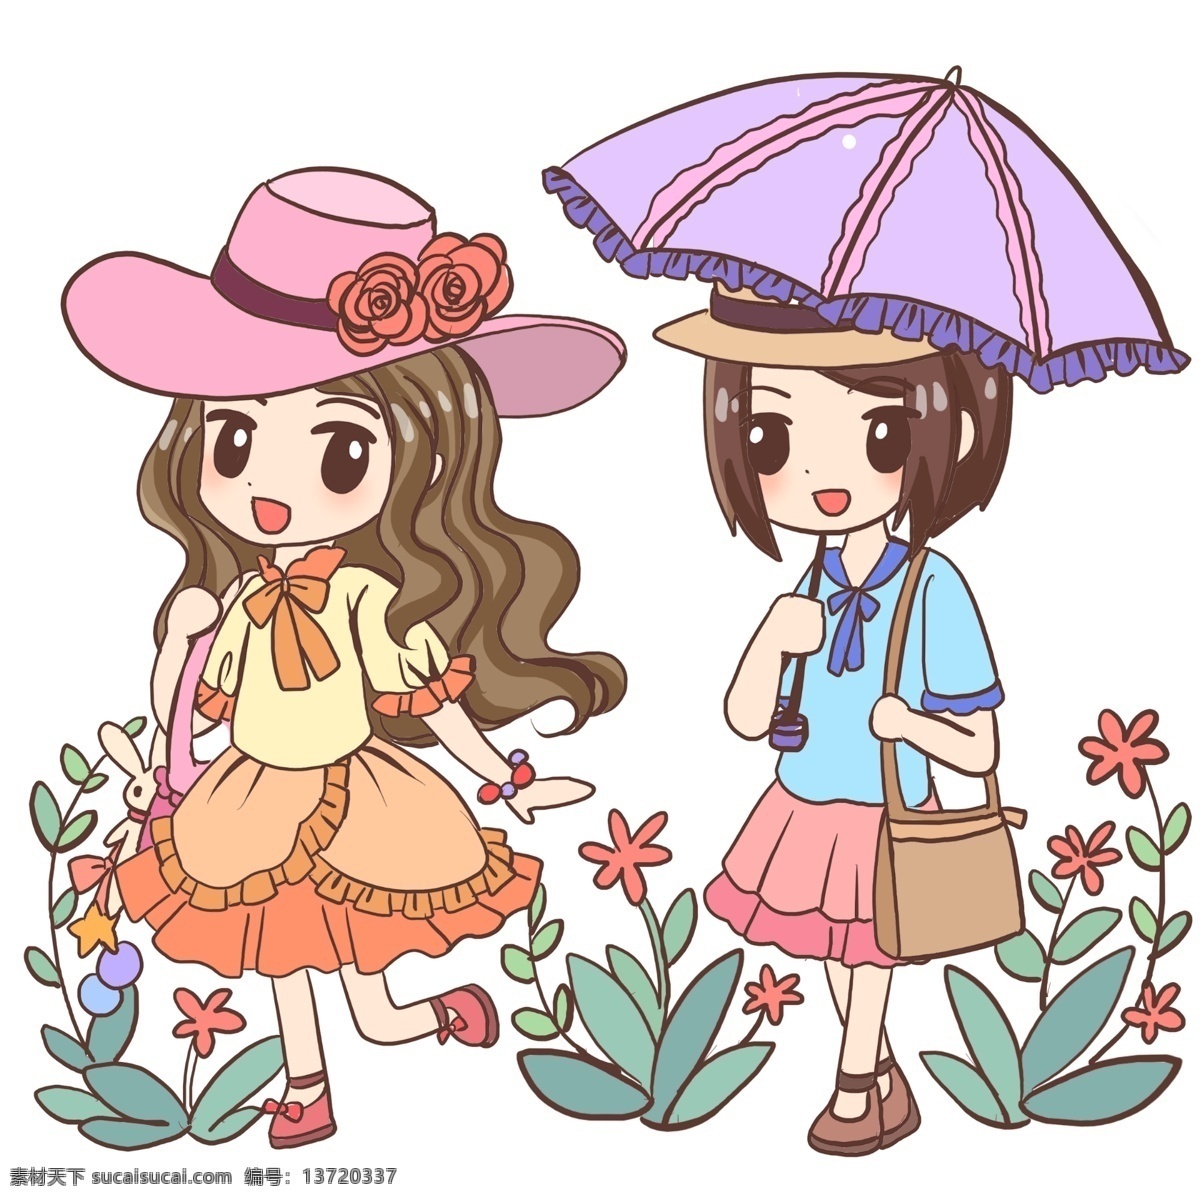 夏天 朋友 逛街 夏日 夏季 太阳伞 太阳帽 植物 花朵 女孩子 凉爽 裙子 降暑 避暑 降温